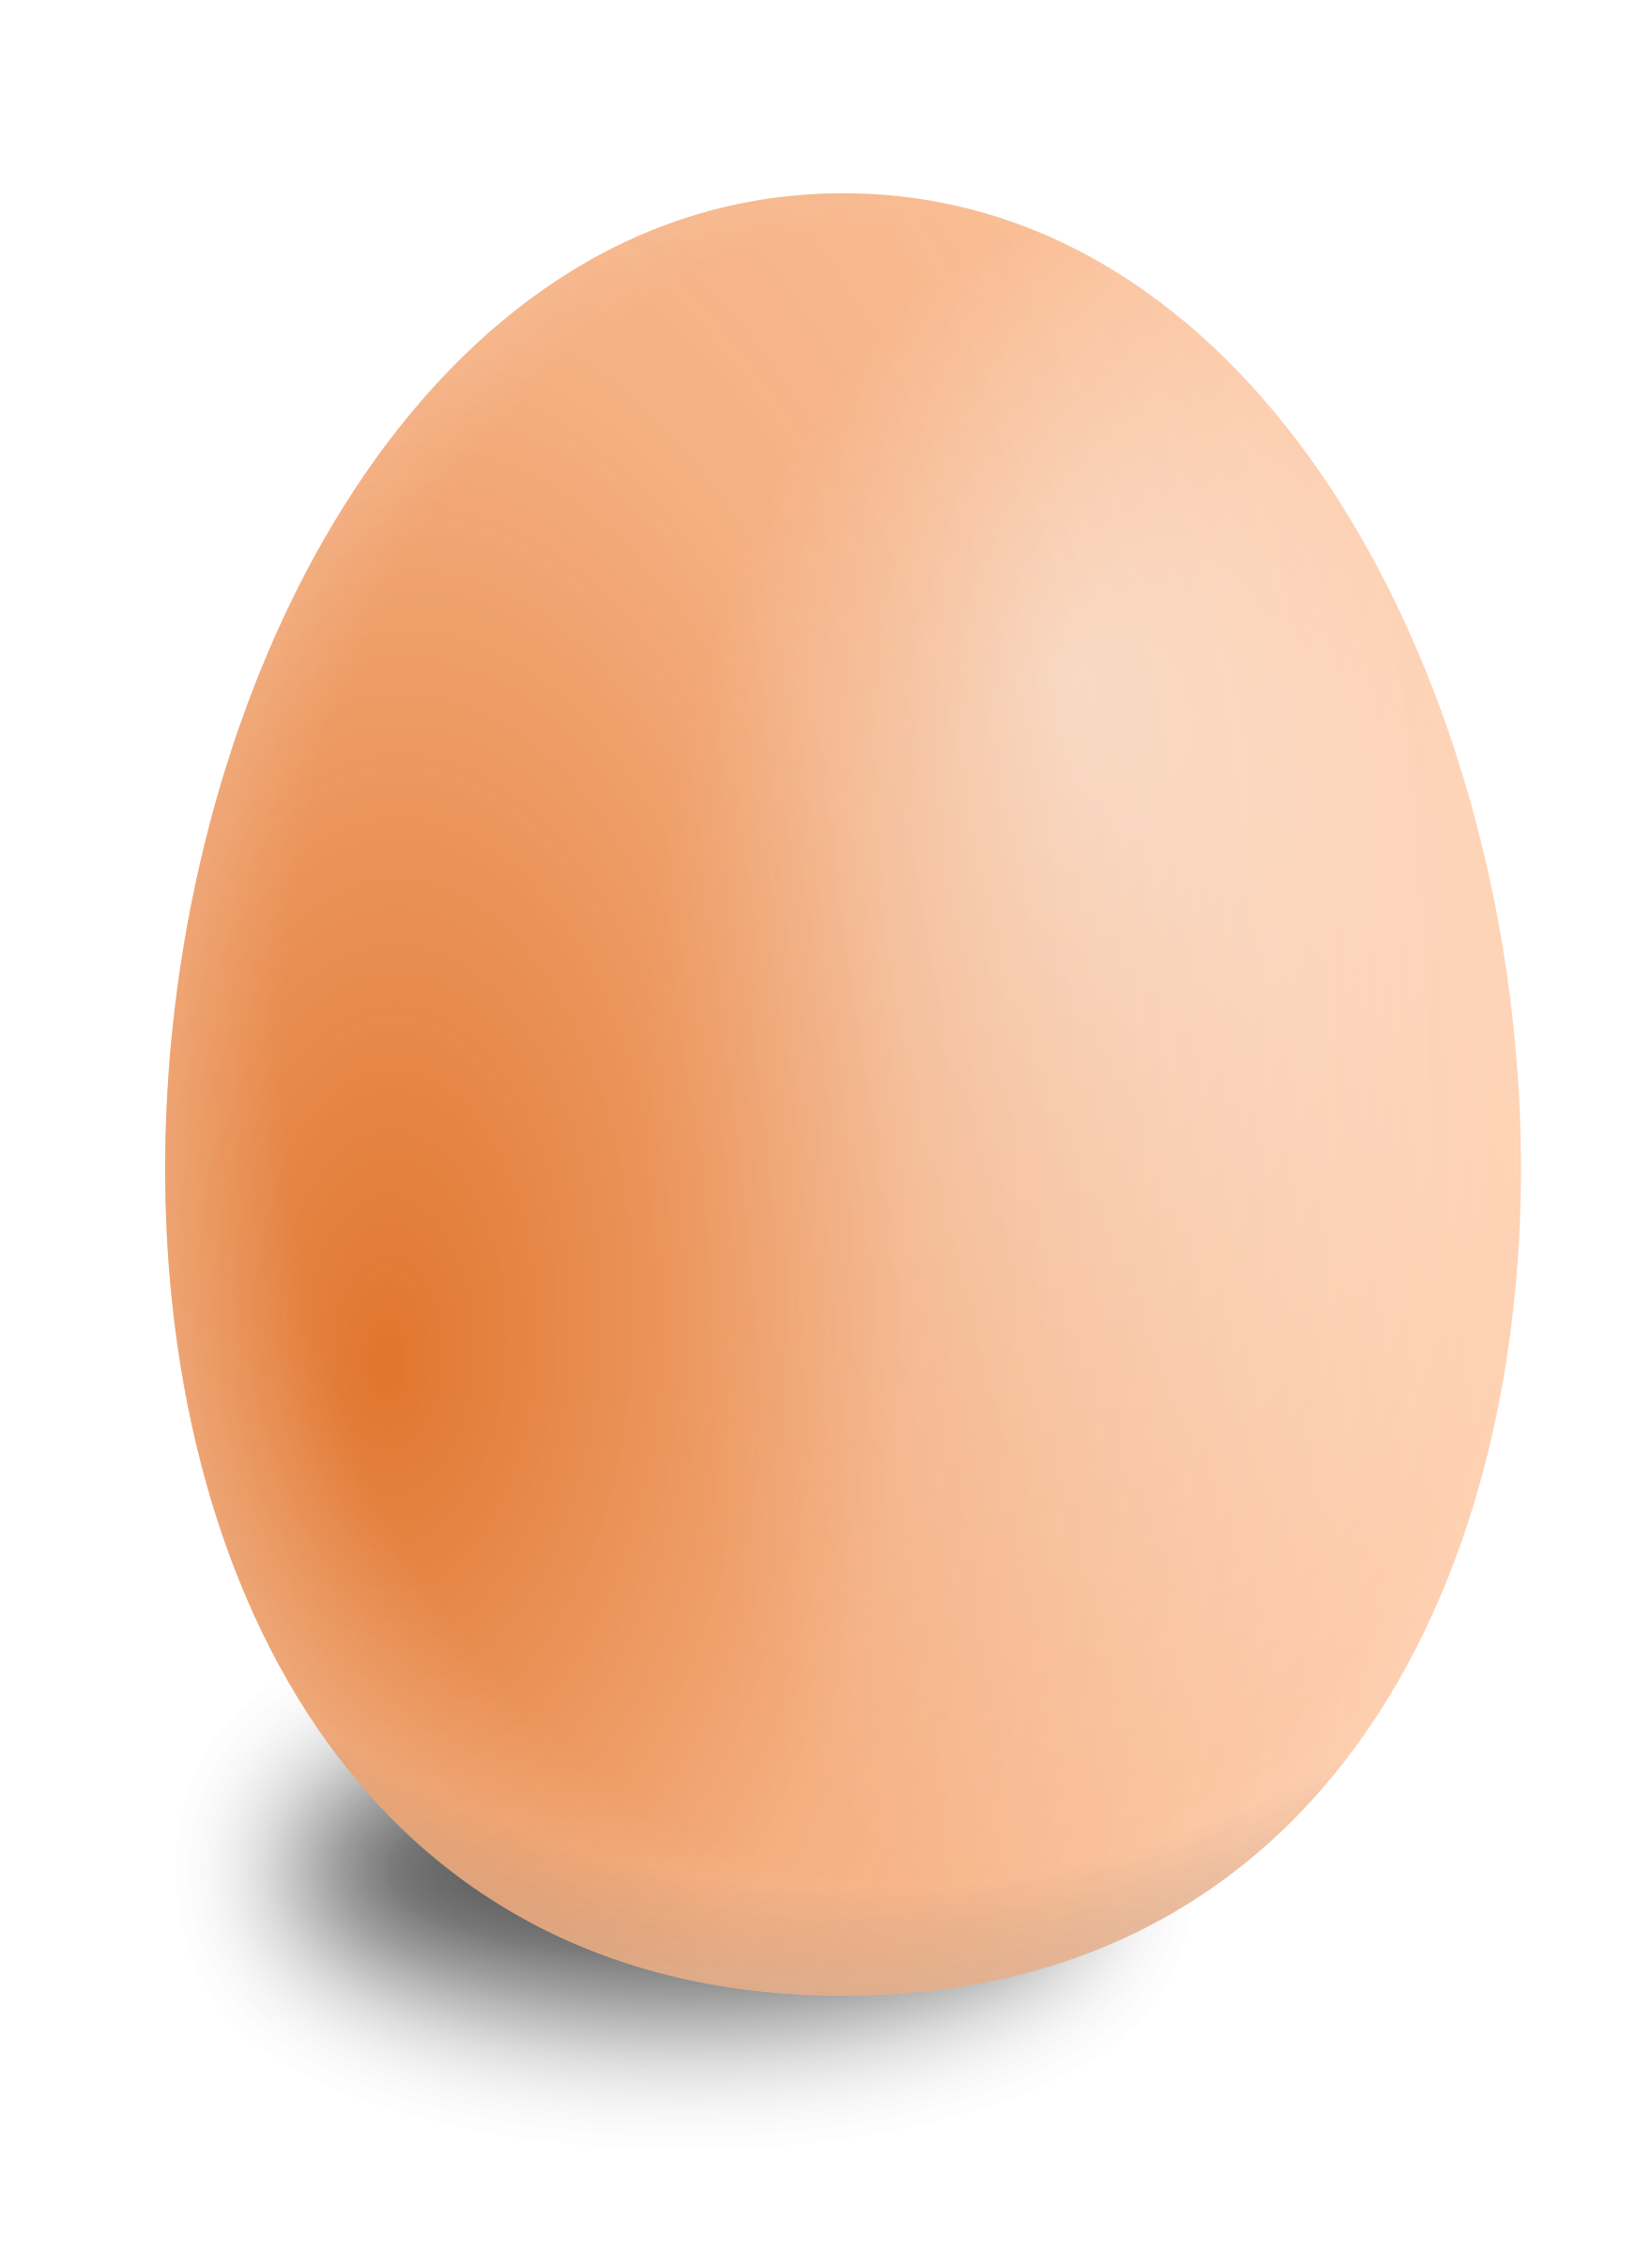 Egg - Broken Egg, Transparent background PNG HD thumbnail